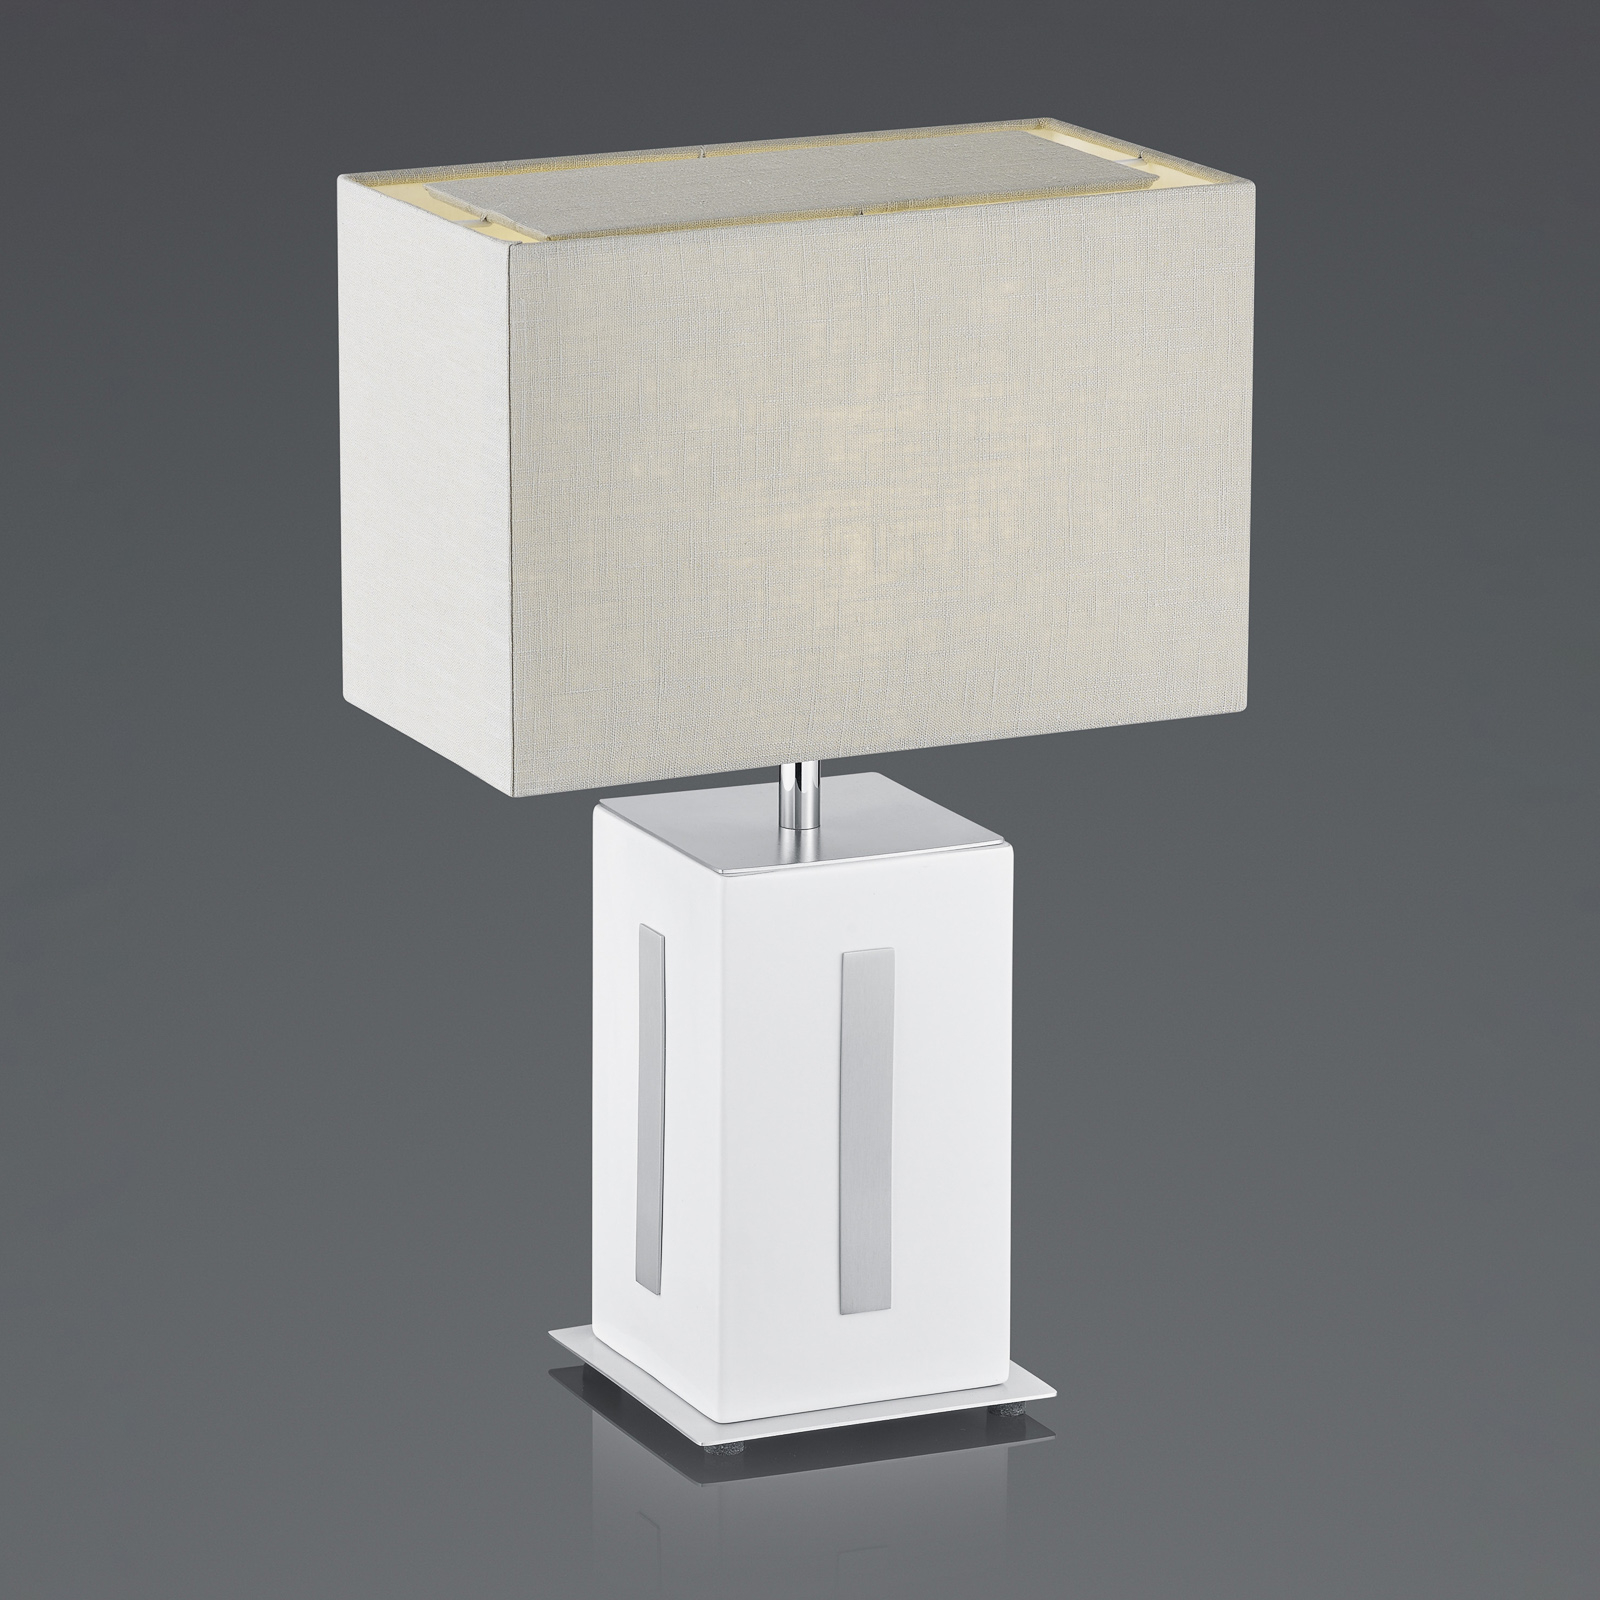 BANKAMP Karlo bordlampe hvit/grå, høyde 47 cm